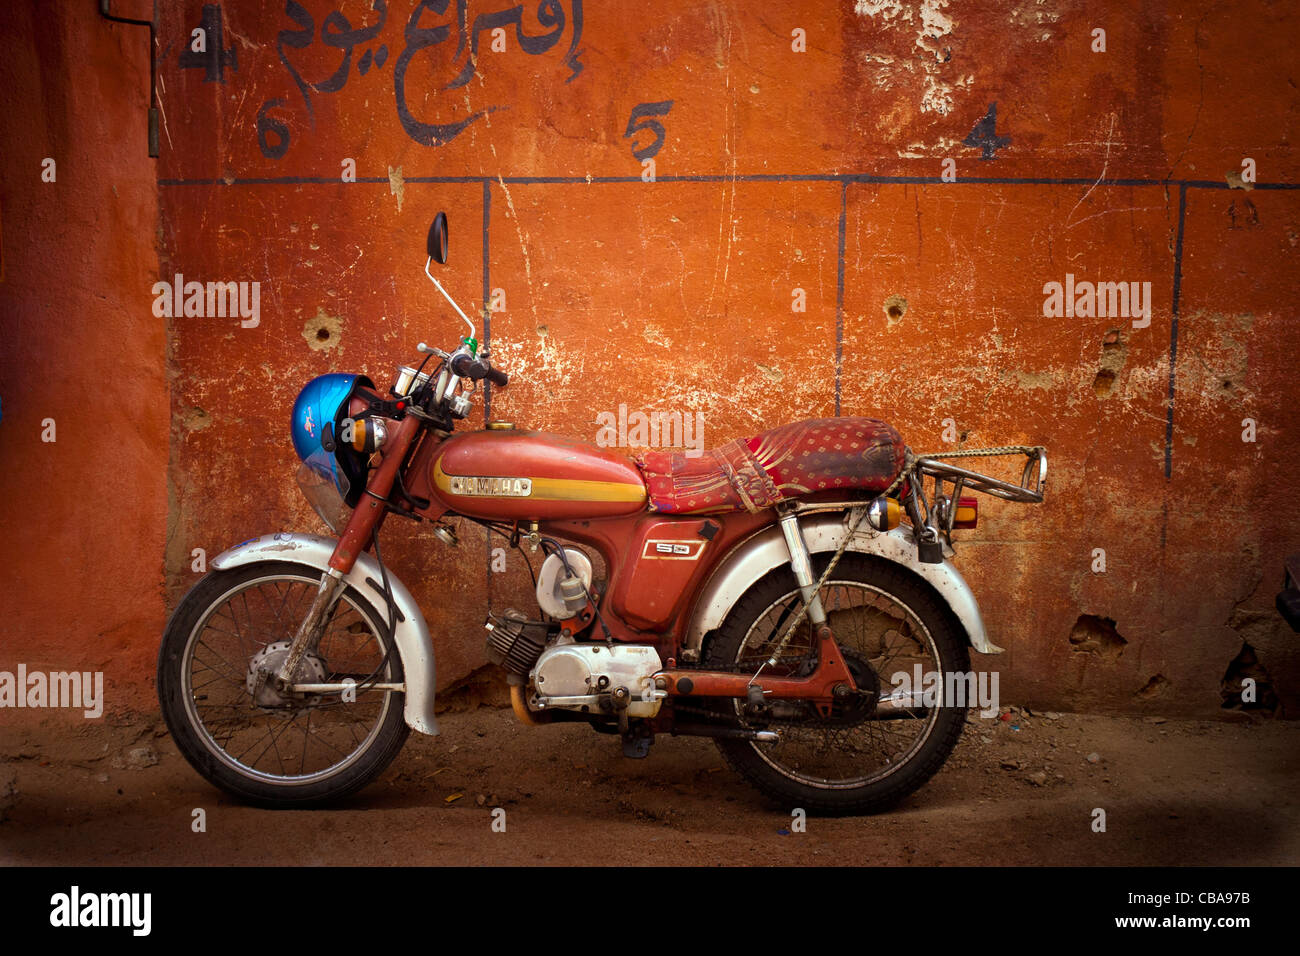 Ein Yamaha 50ccm Schlaganfall zwei luftgekühlte Motorrad lehnte sich gegen  eine Wand in Marokko Stockfotografie - Alamy